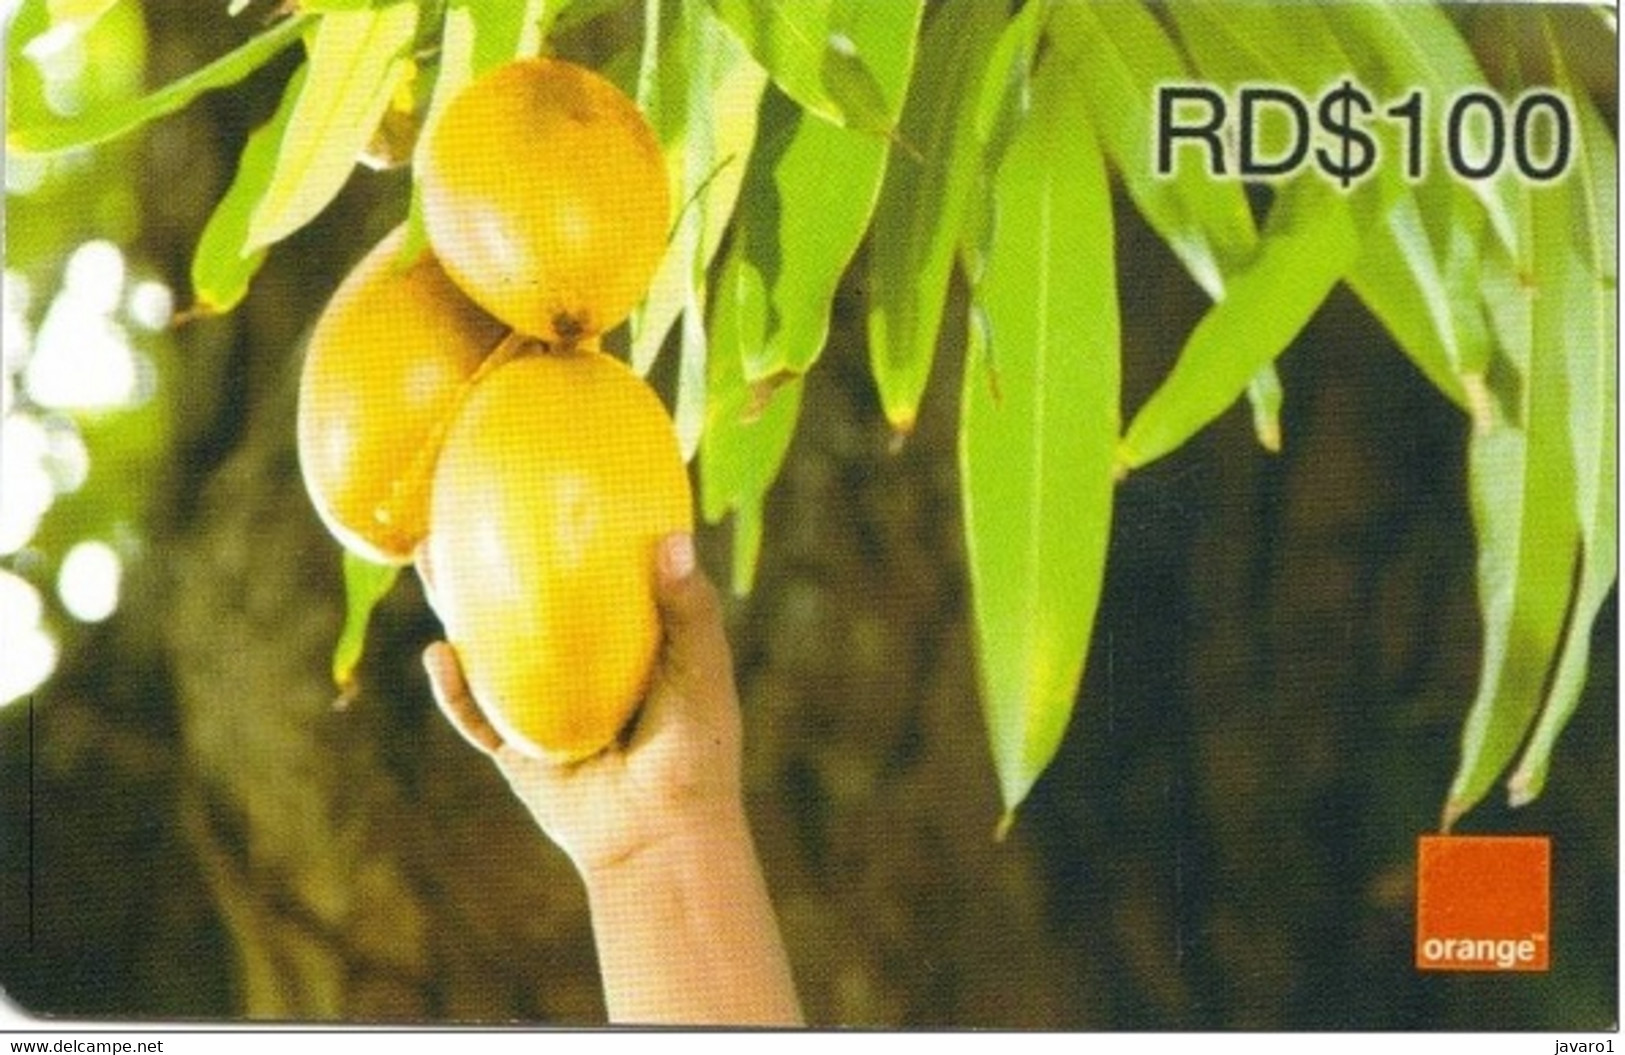 ORANGE : OR-30B RD$100 Mangoes USED Exp: 31-12-2010 - Dominicaanse Republiek